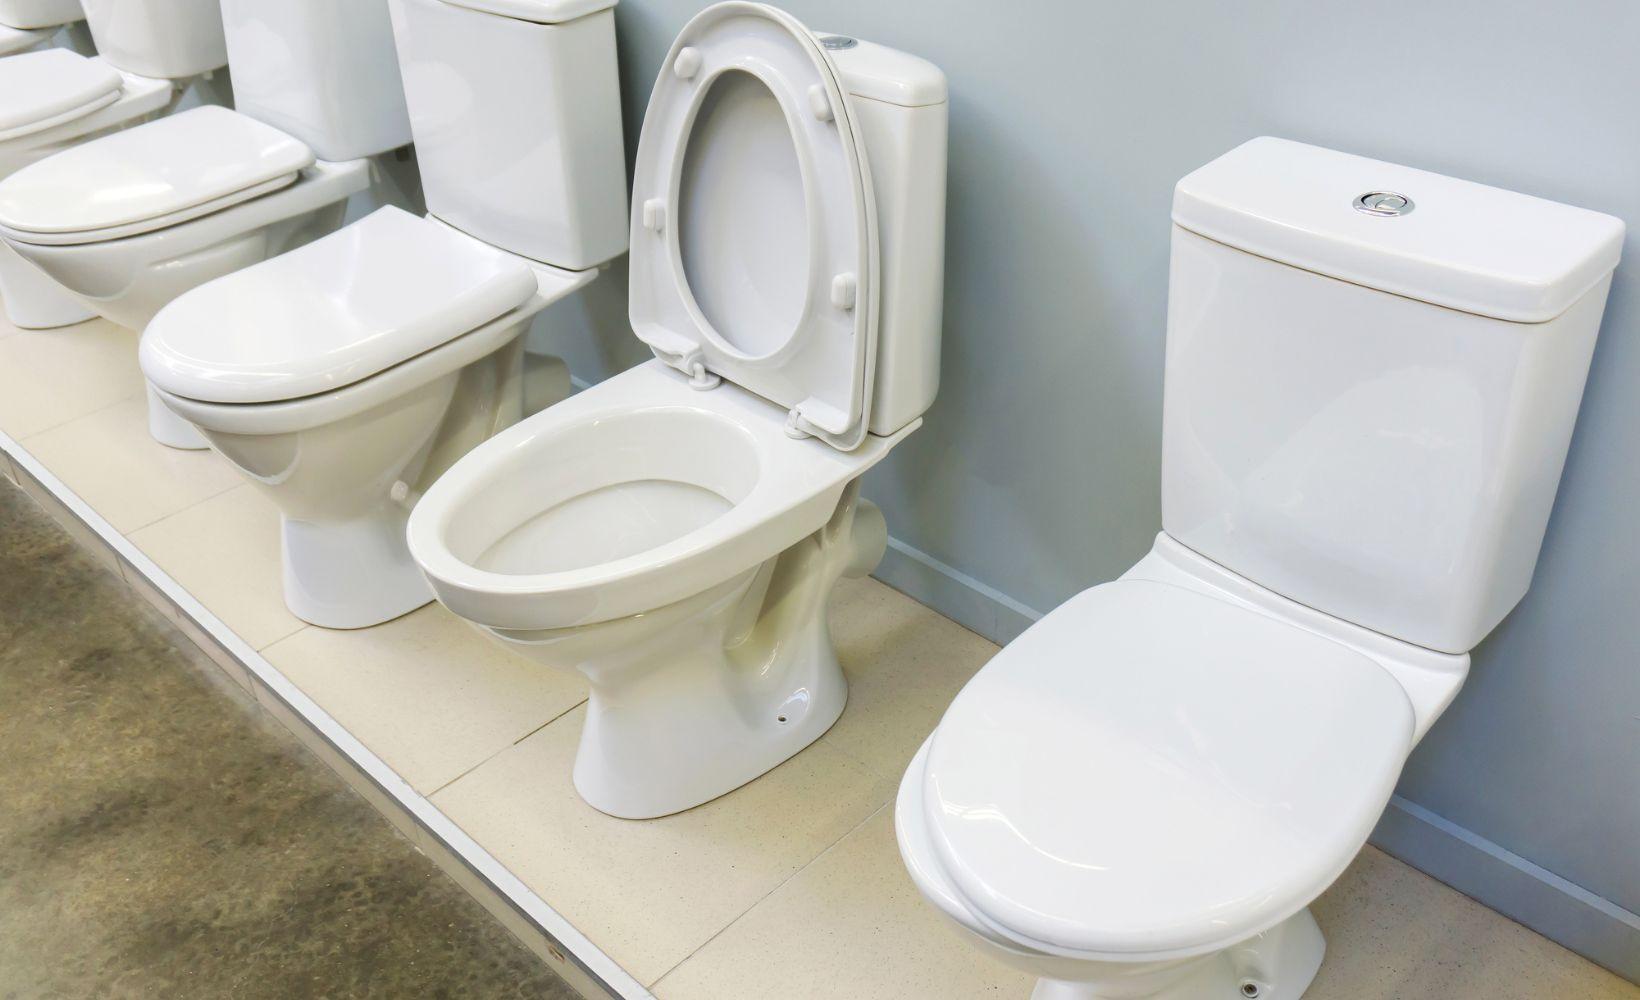 Choisir l installation d une toilette plombier vdk